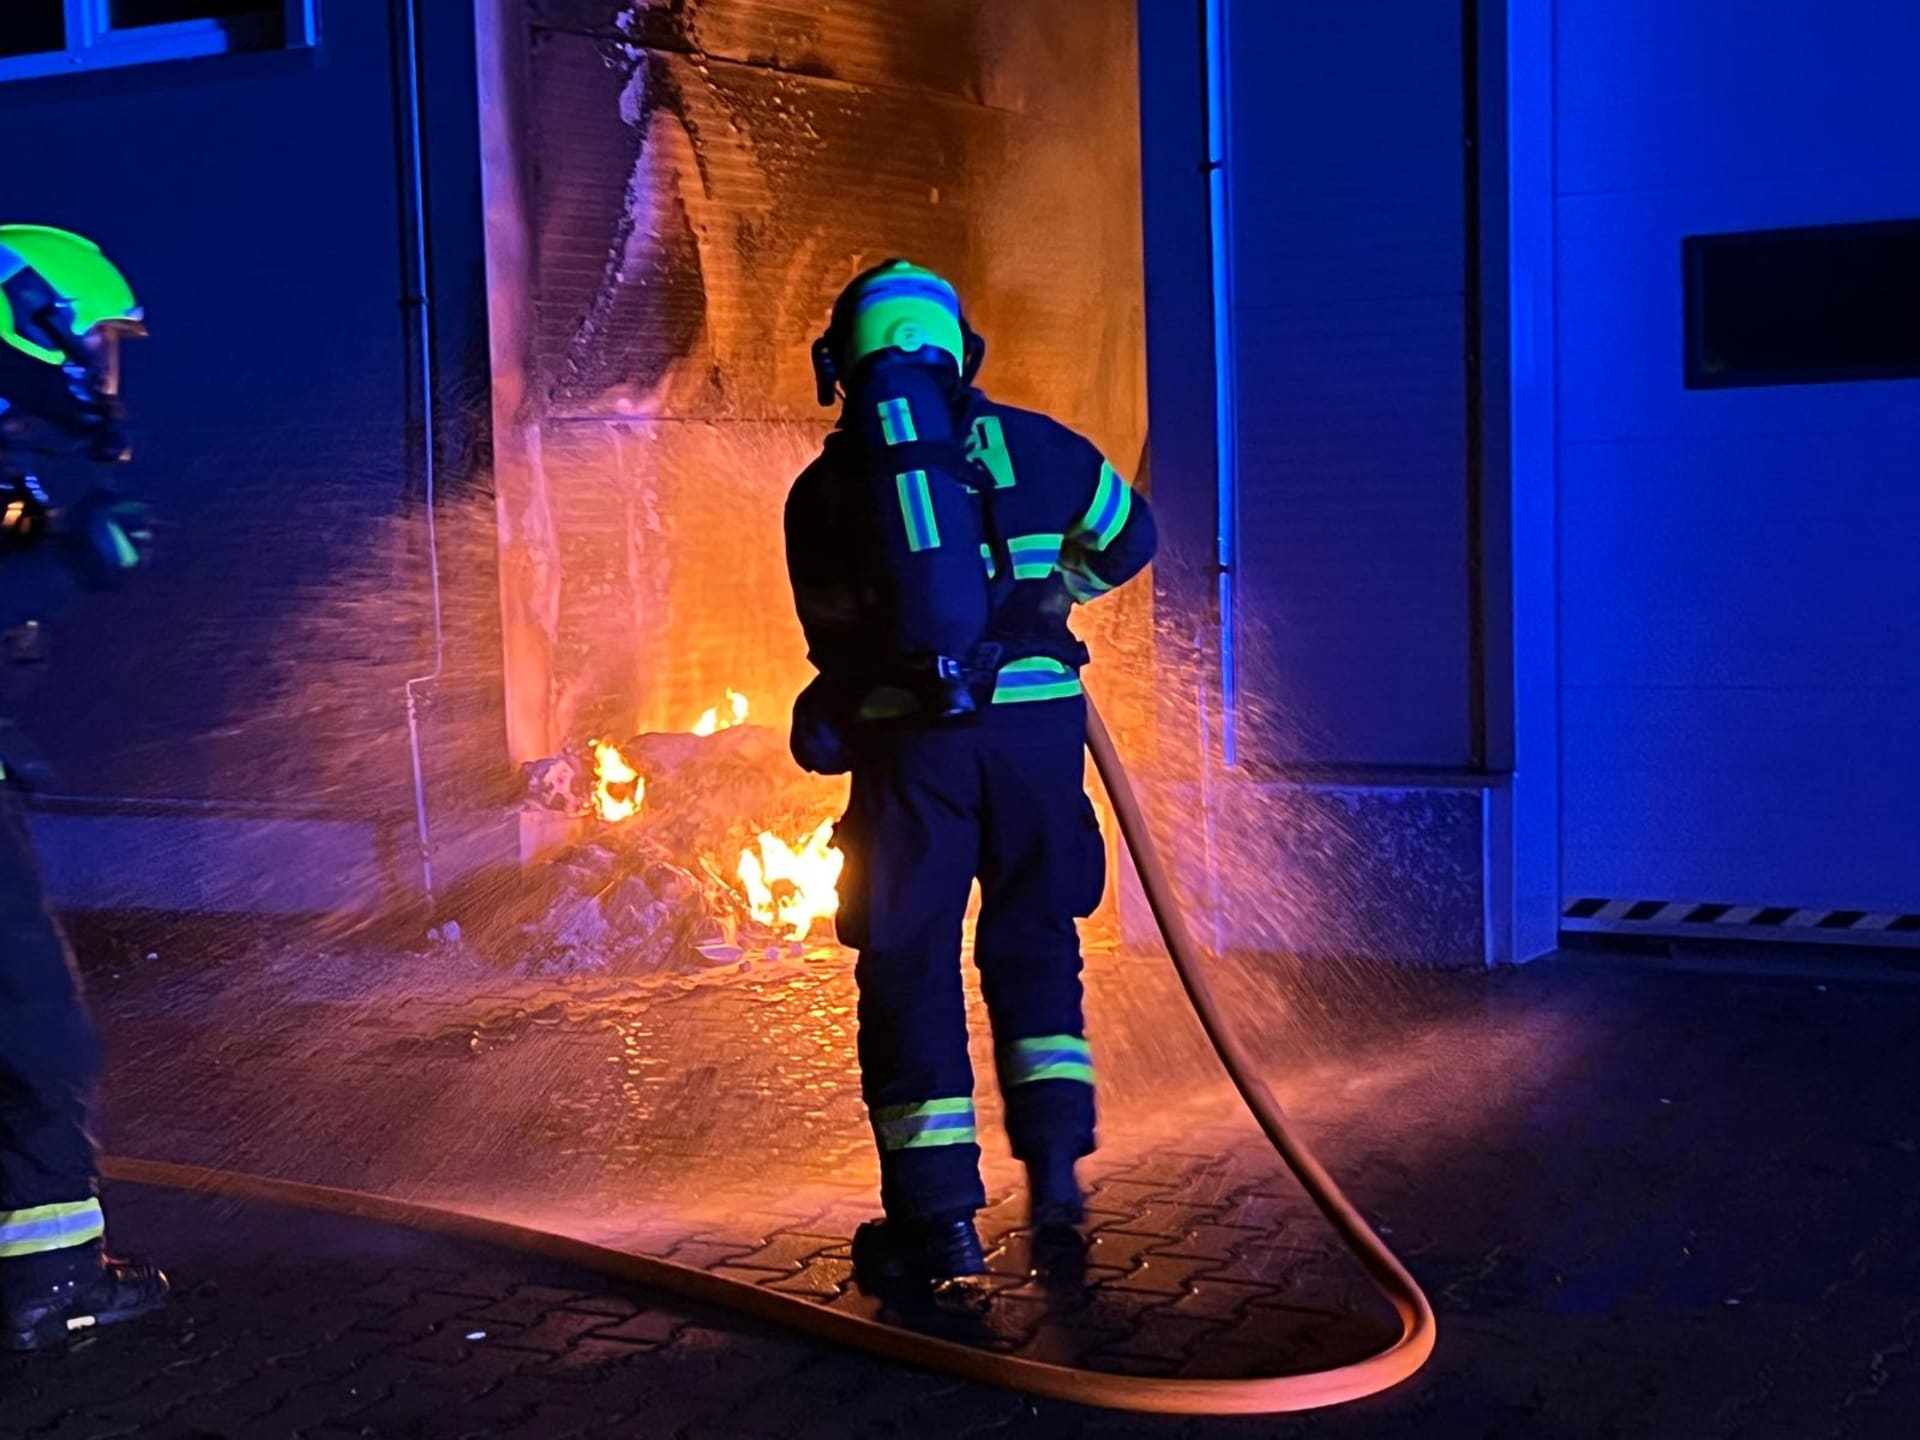 Pražští hasiči zasahovali u požáru kontejneru v Chrášťanech, který se rozšířil na přilehlou halu. 